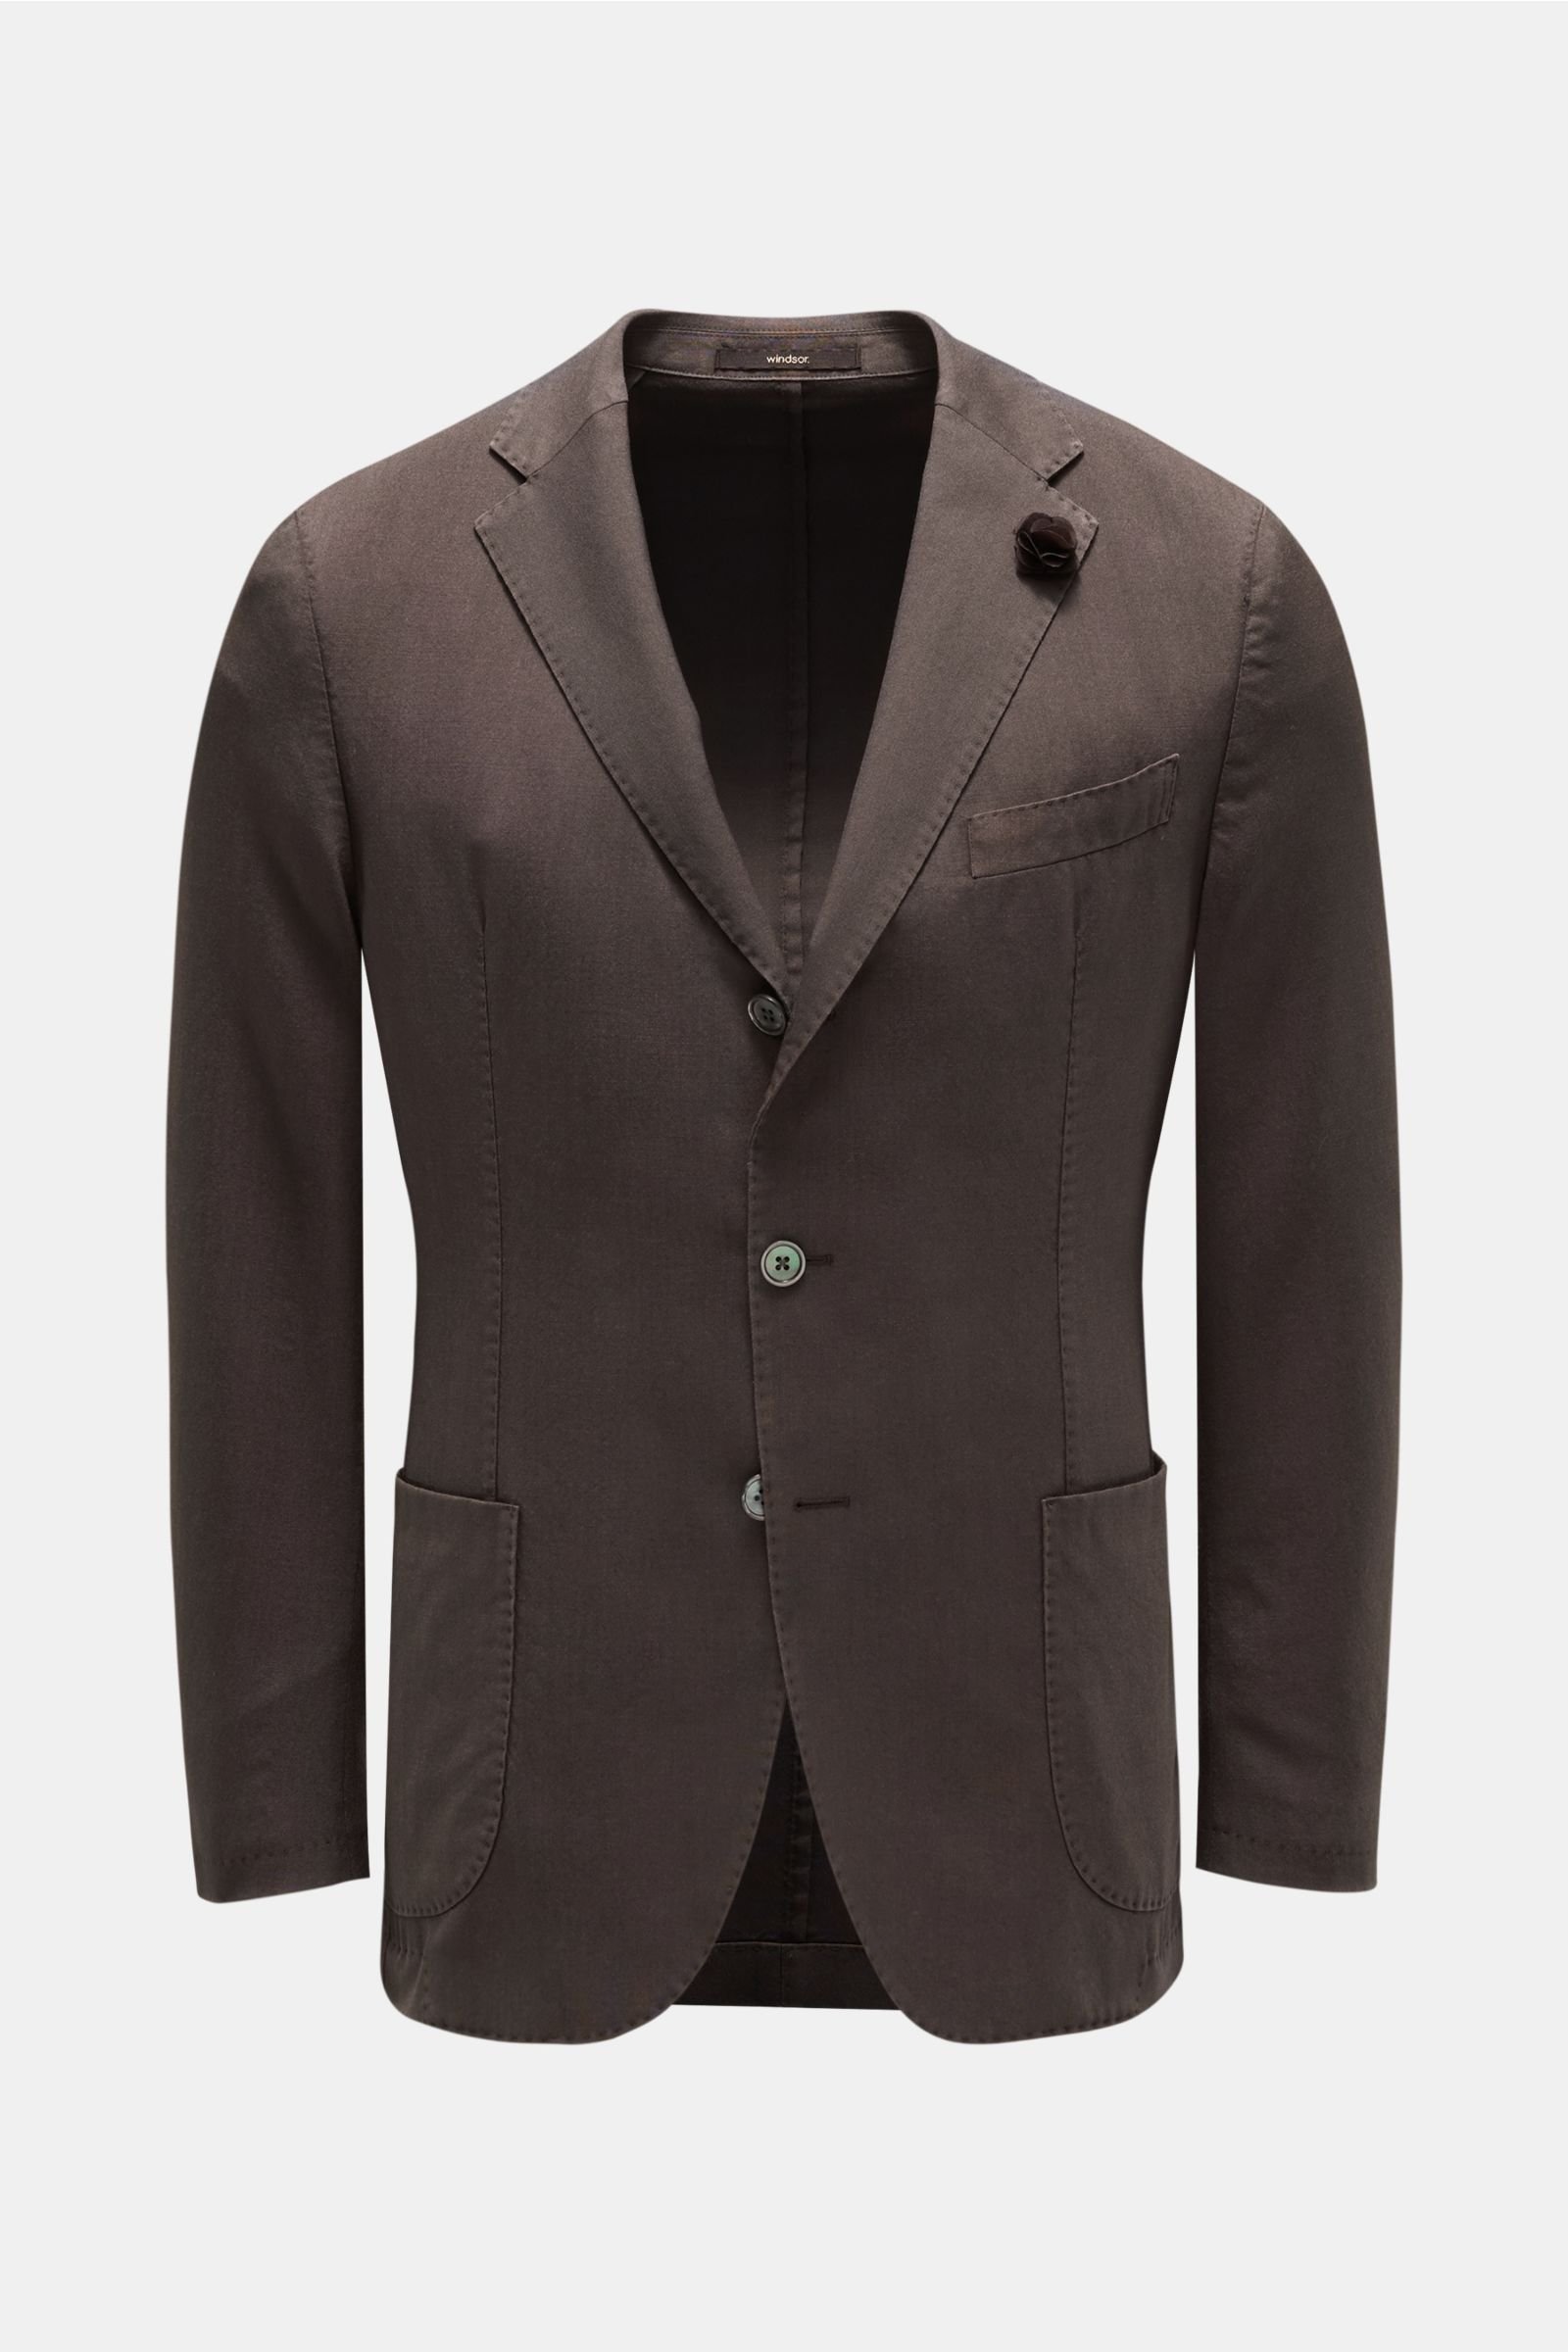 Smart-casual jacket 'Camicia' grey-brown